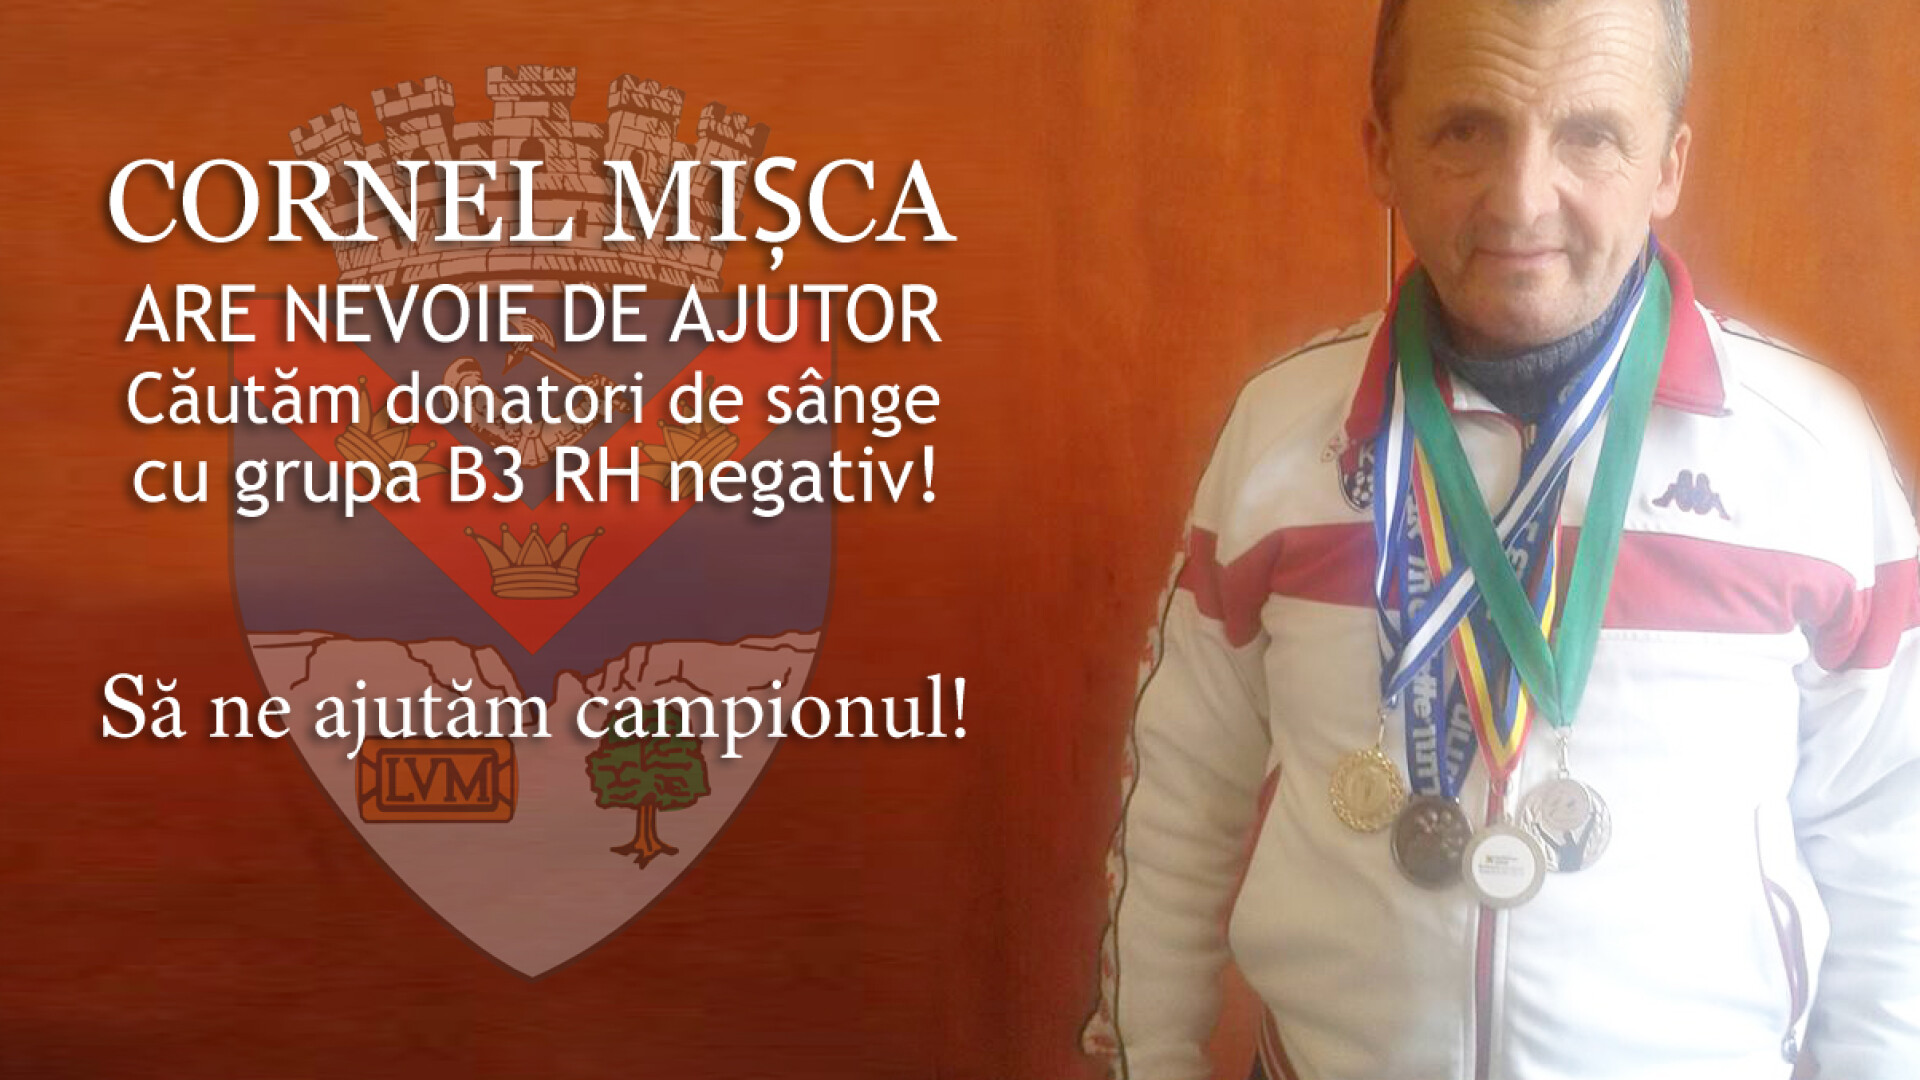 Cornel Misca, maratonistul turdean are nevoie de ajutor